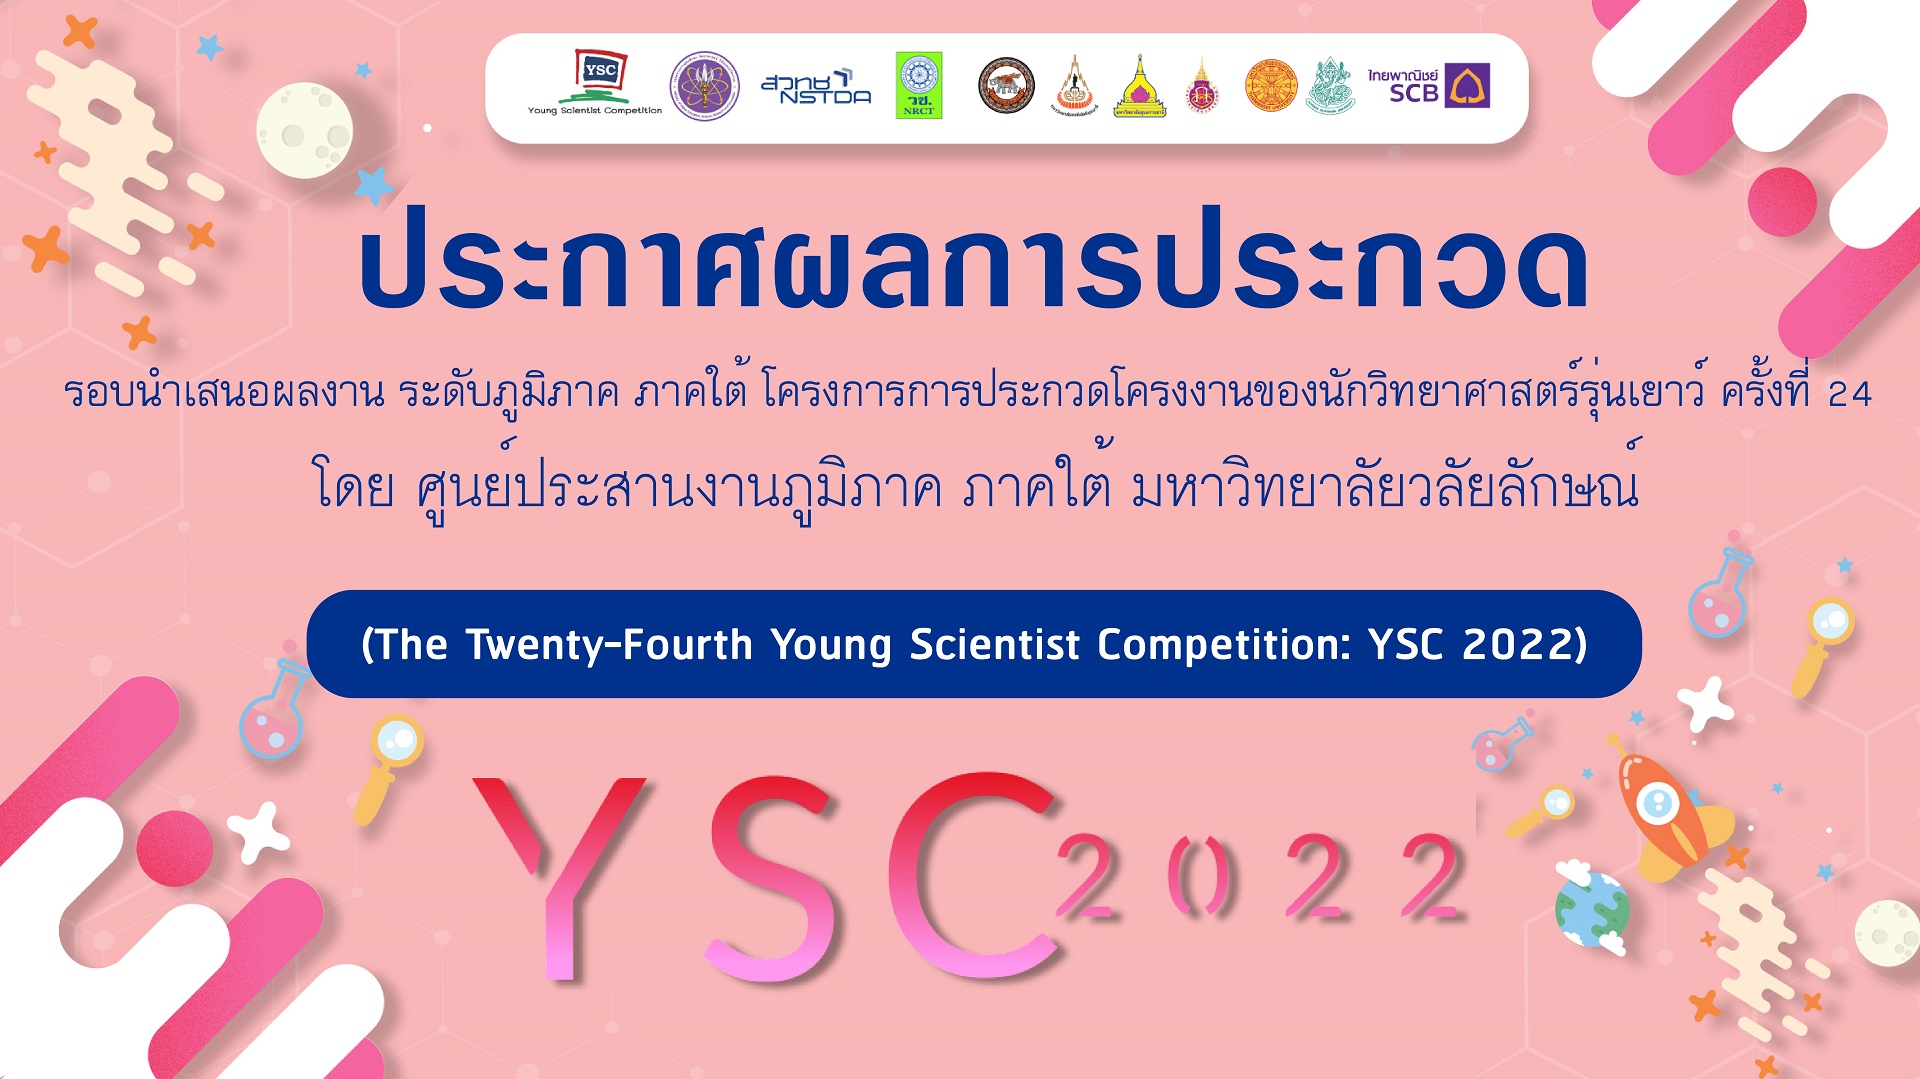 ศูนย์บริการวิชาการ ขอประกาศผลการประกวดโครงงานของนักวิทยาศาสตร์รุ่นเยาว์ ครั้งที่ 24 (YSC 2022) รอบนำเสนอผลงาน ระดับภูมิภาค ภาคใต้